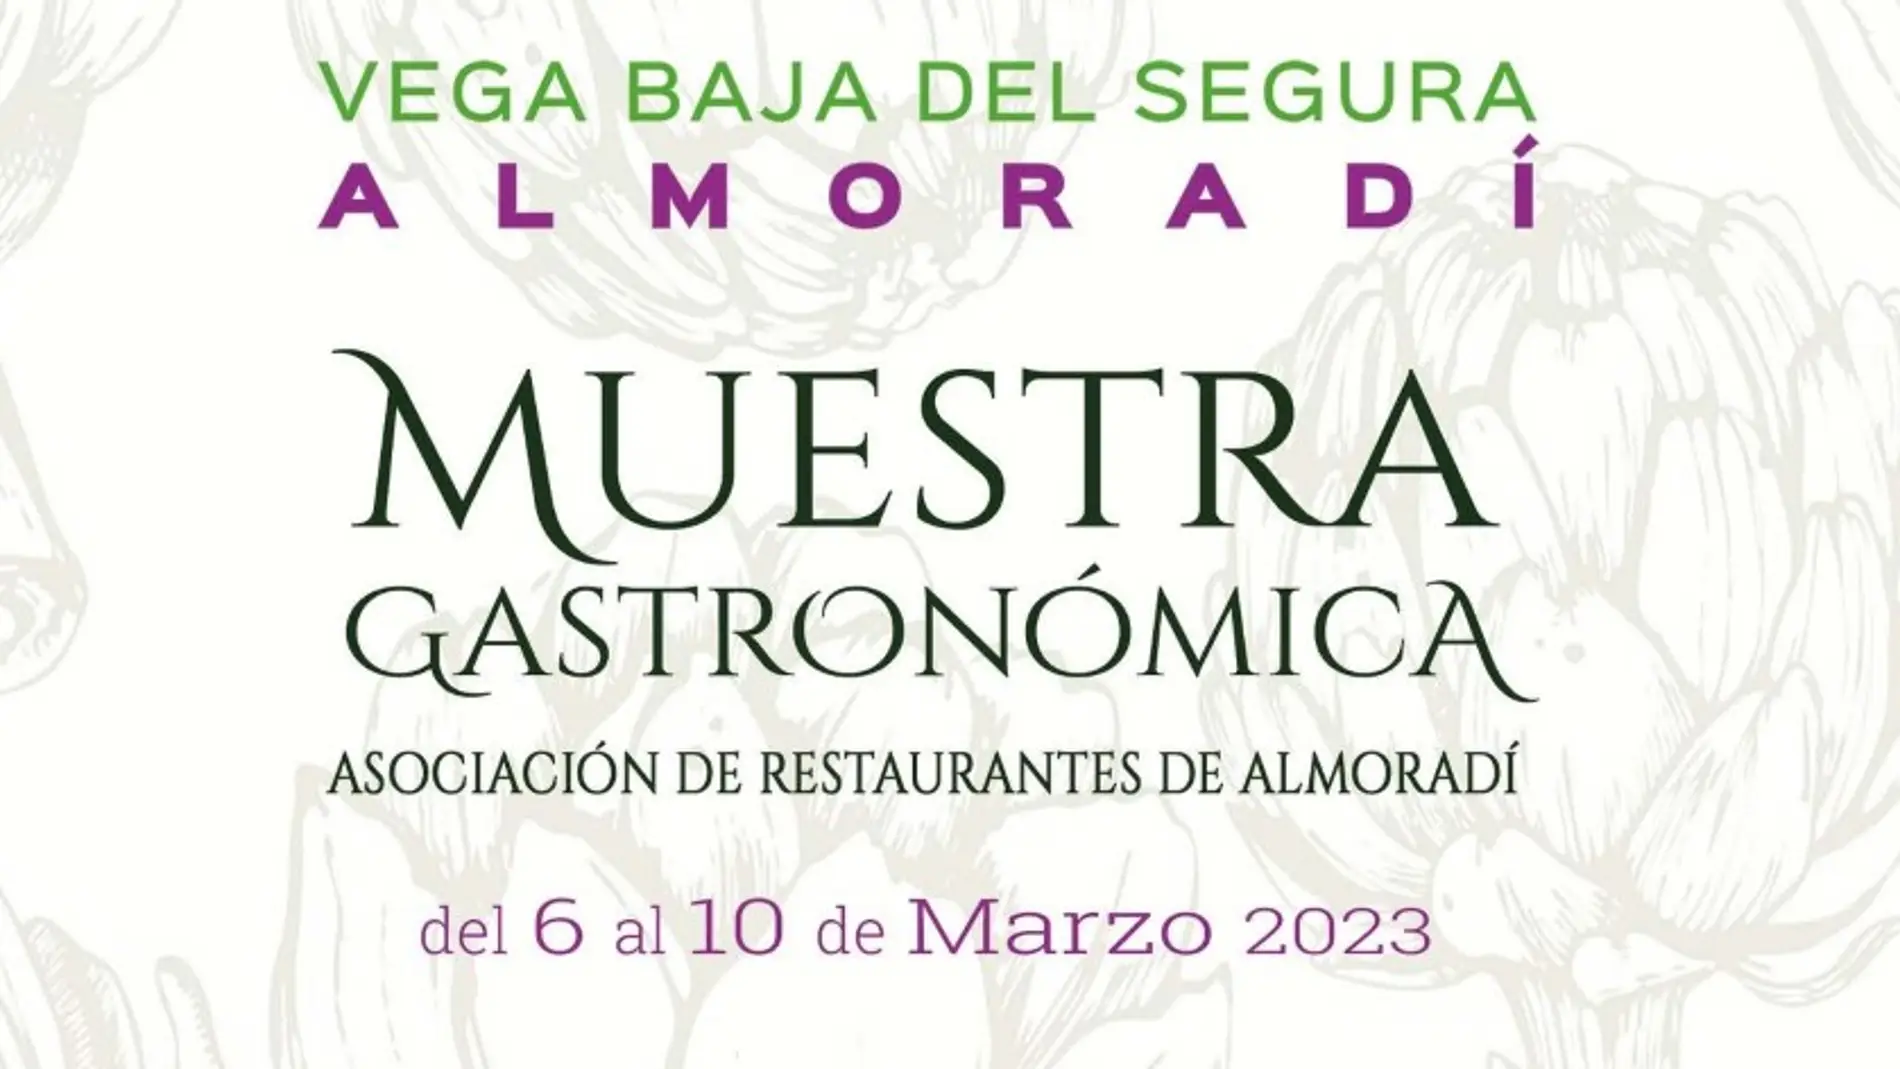 Almoradí inaugura su muestra gastronómica de la alcachofa en sus restaurantes 